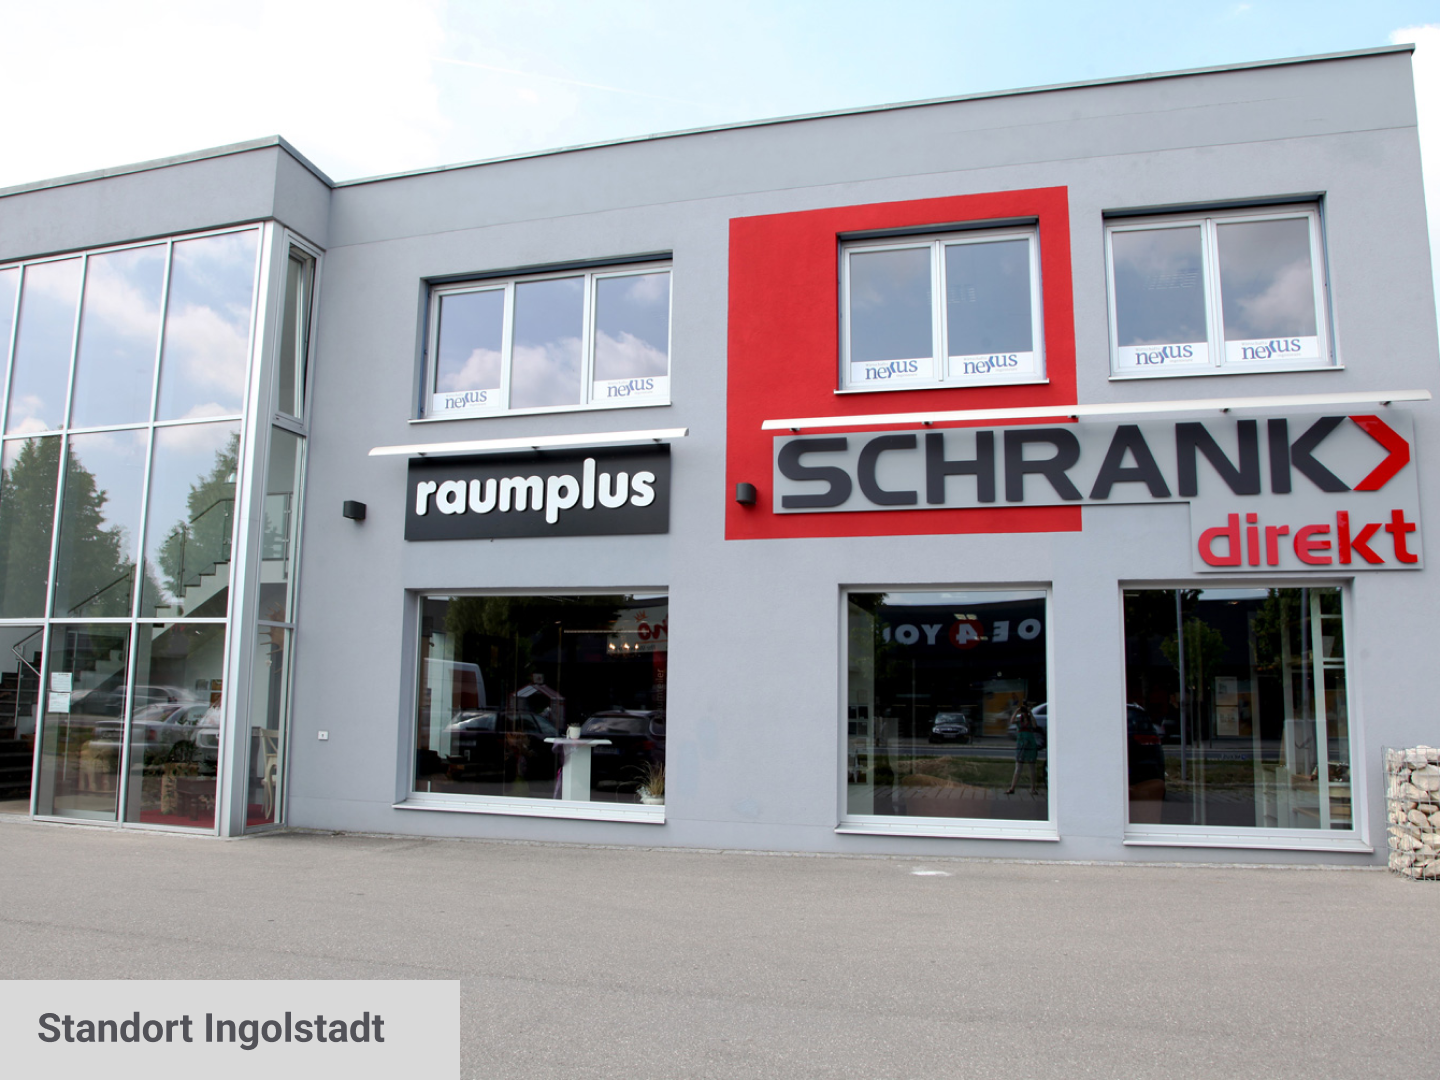 Standort von Schrank-direkt in Ingolstadt.